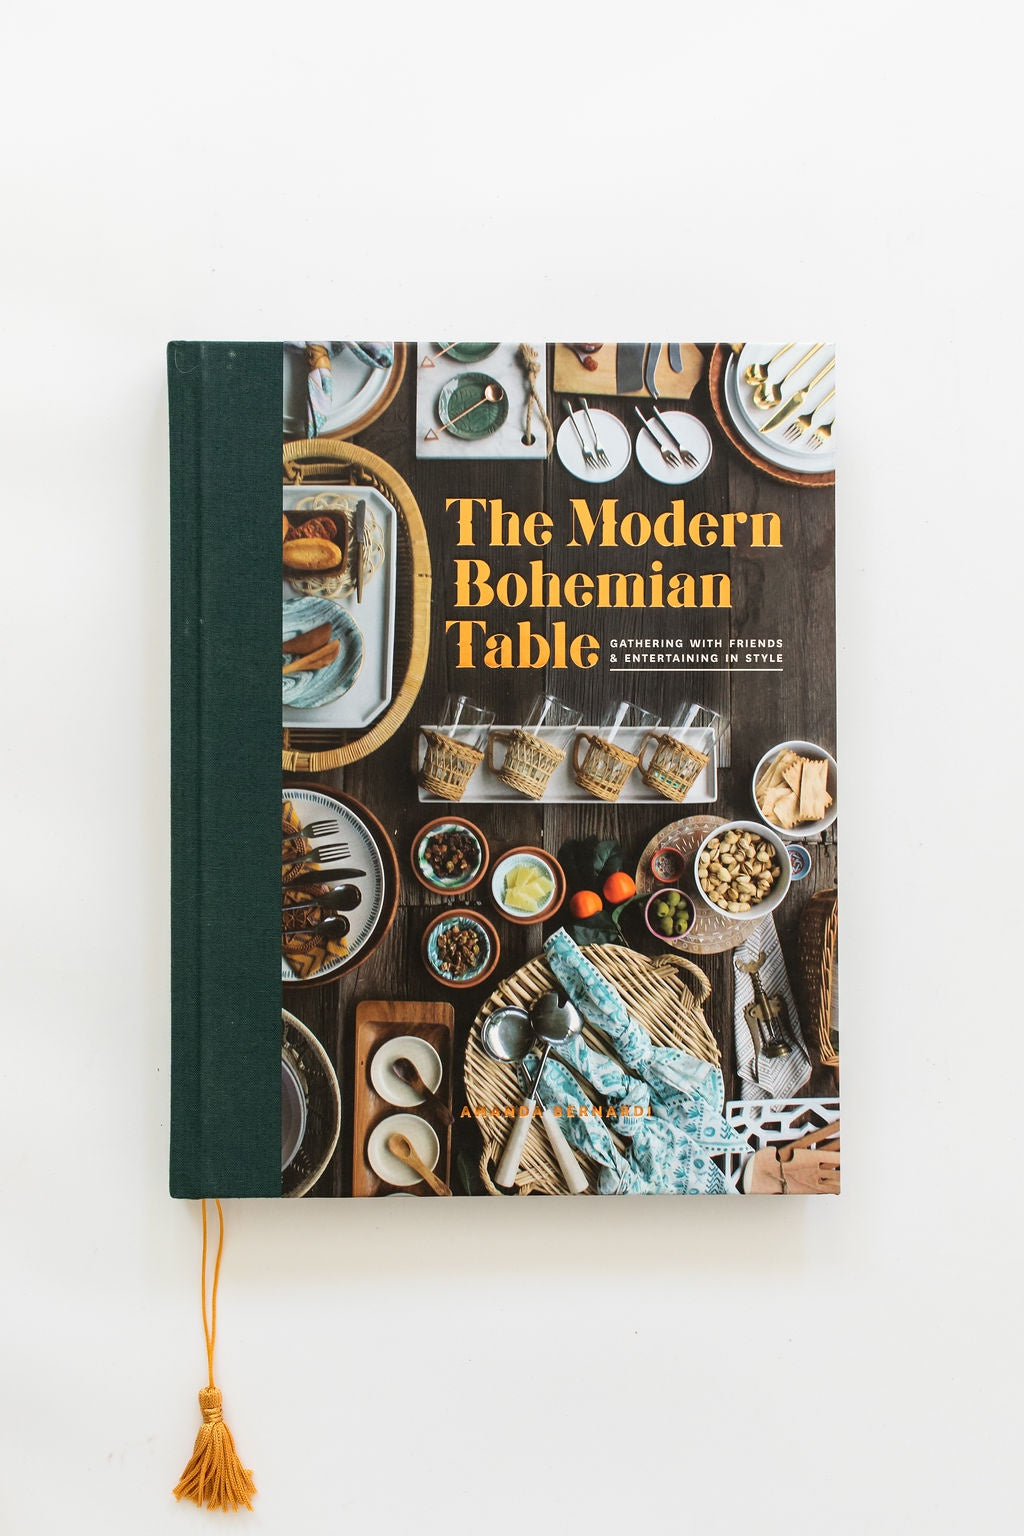 The Modern Bohemian Table by Amanda Bernadi